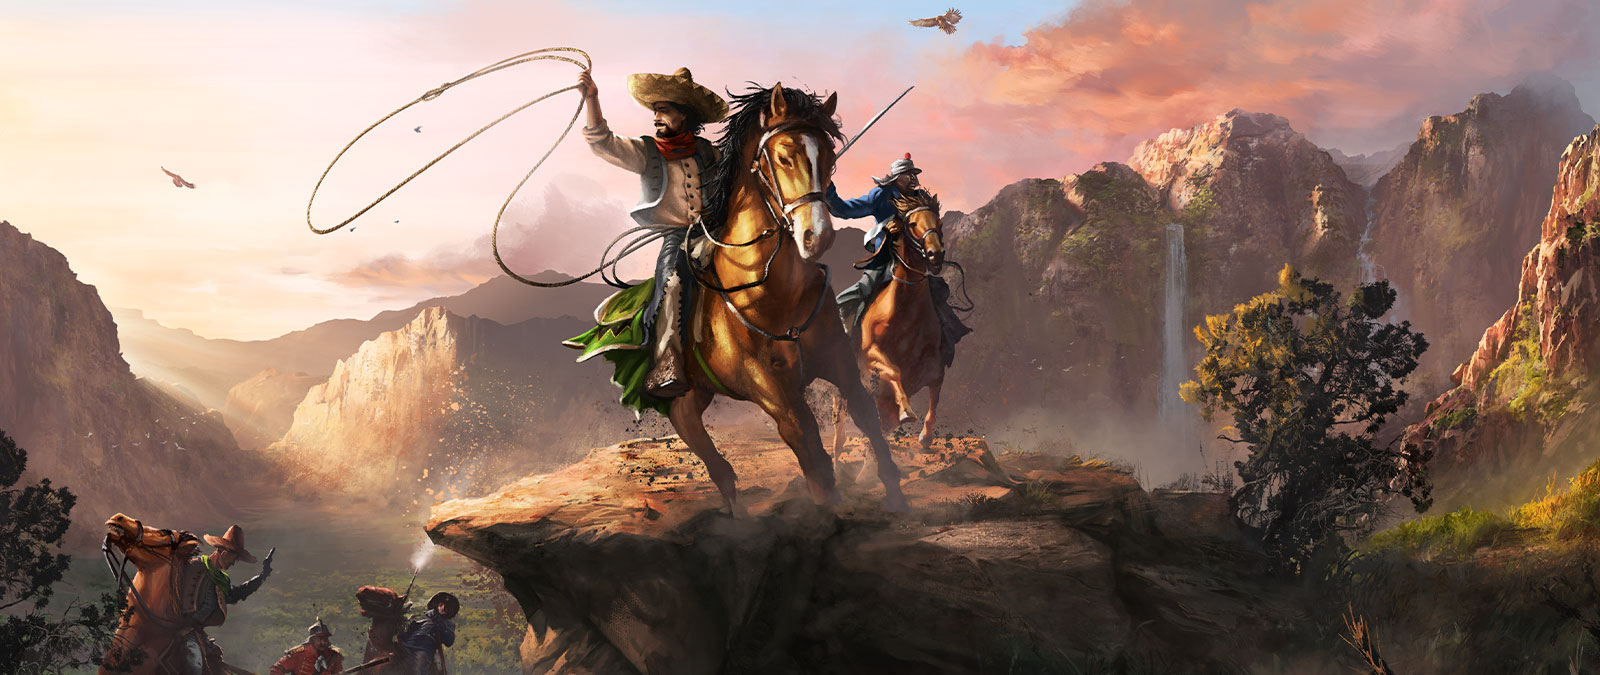 Két szereplő ül lovon egy nagy völgyben, kezükben lasszóval és karddal.